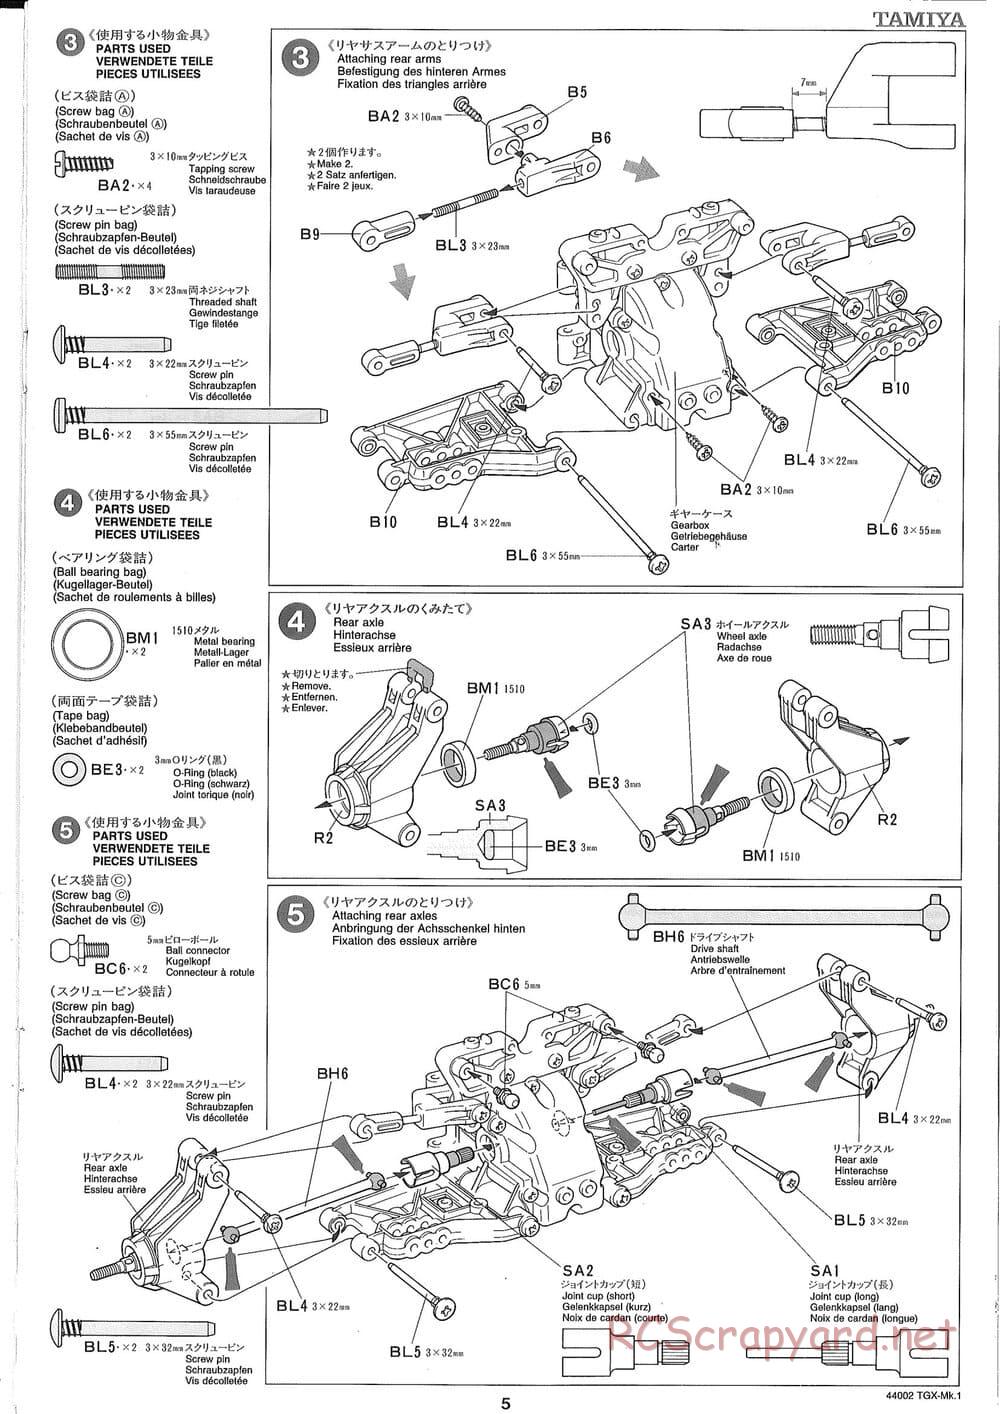 Tamiya - TGX Mk.1 TS Chassis Chassis - Manual - Page 5